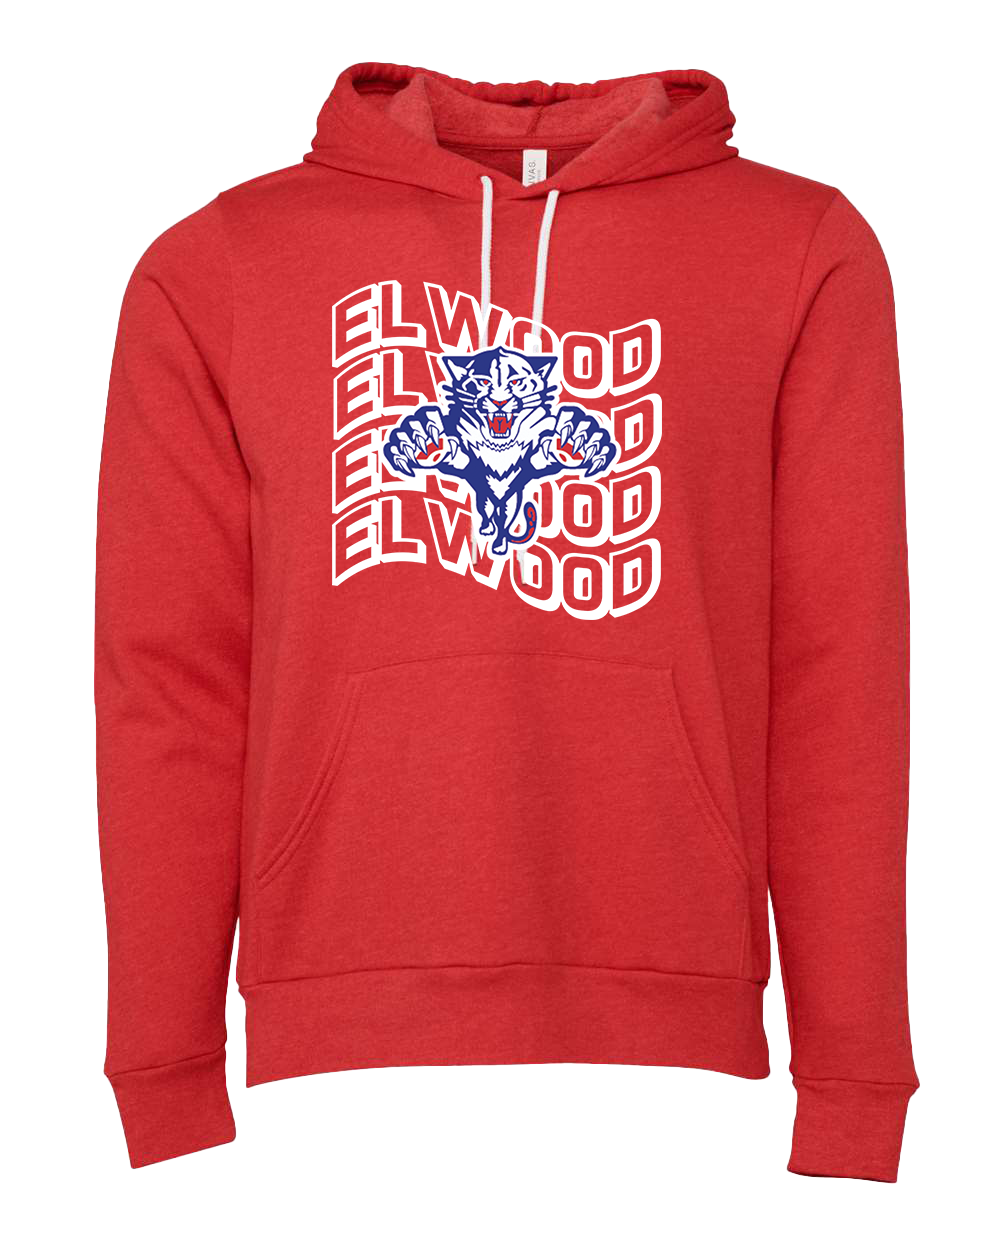 Elwood Panthers Wavy Large Logo Hooded Sweatshirt - Heather Red